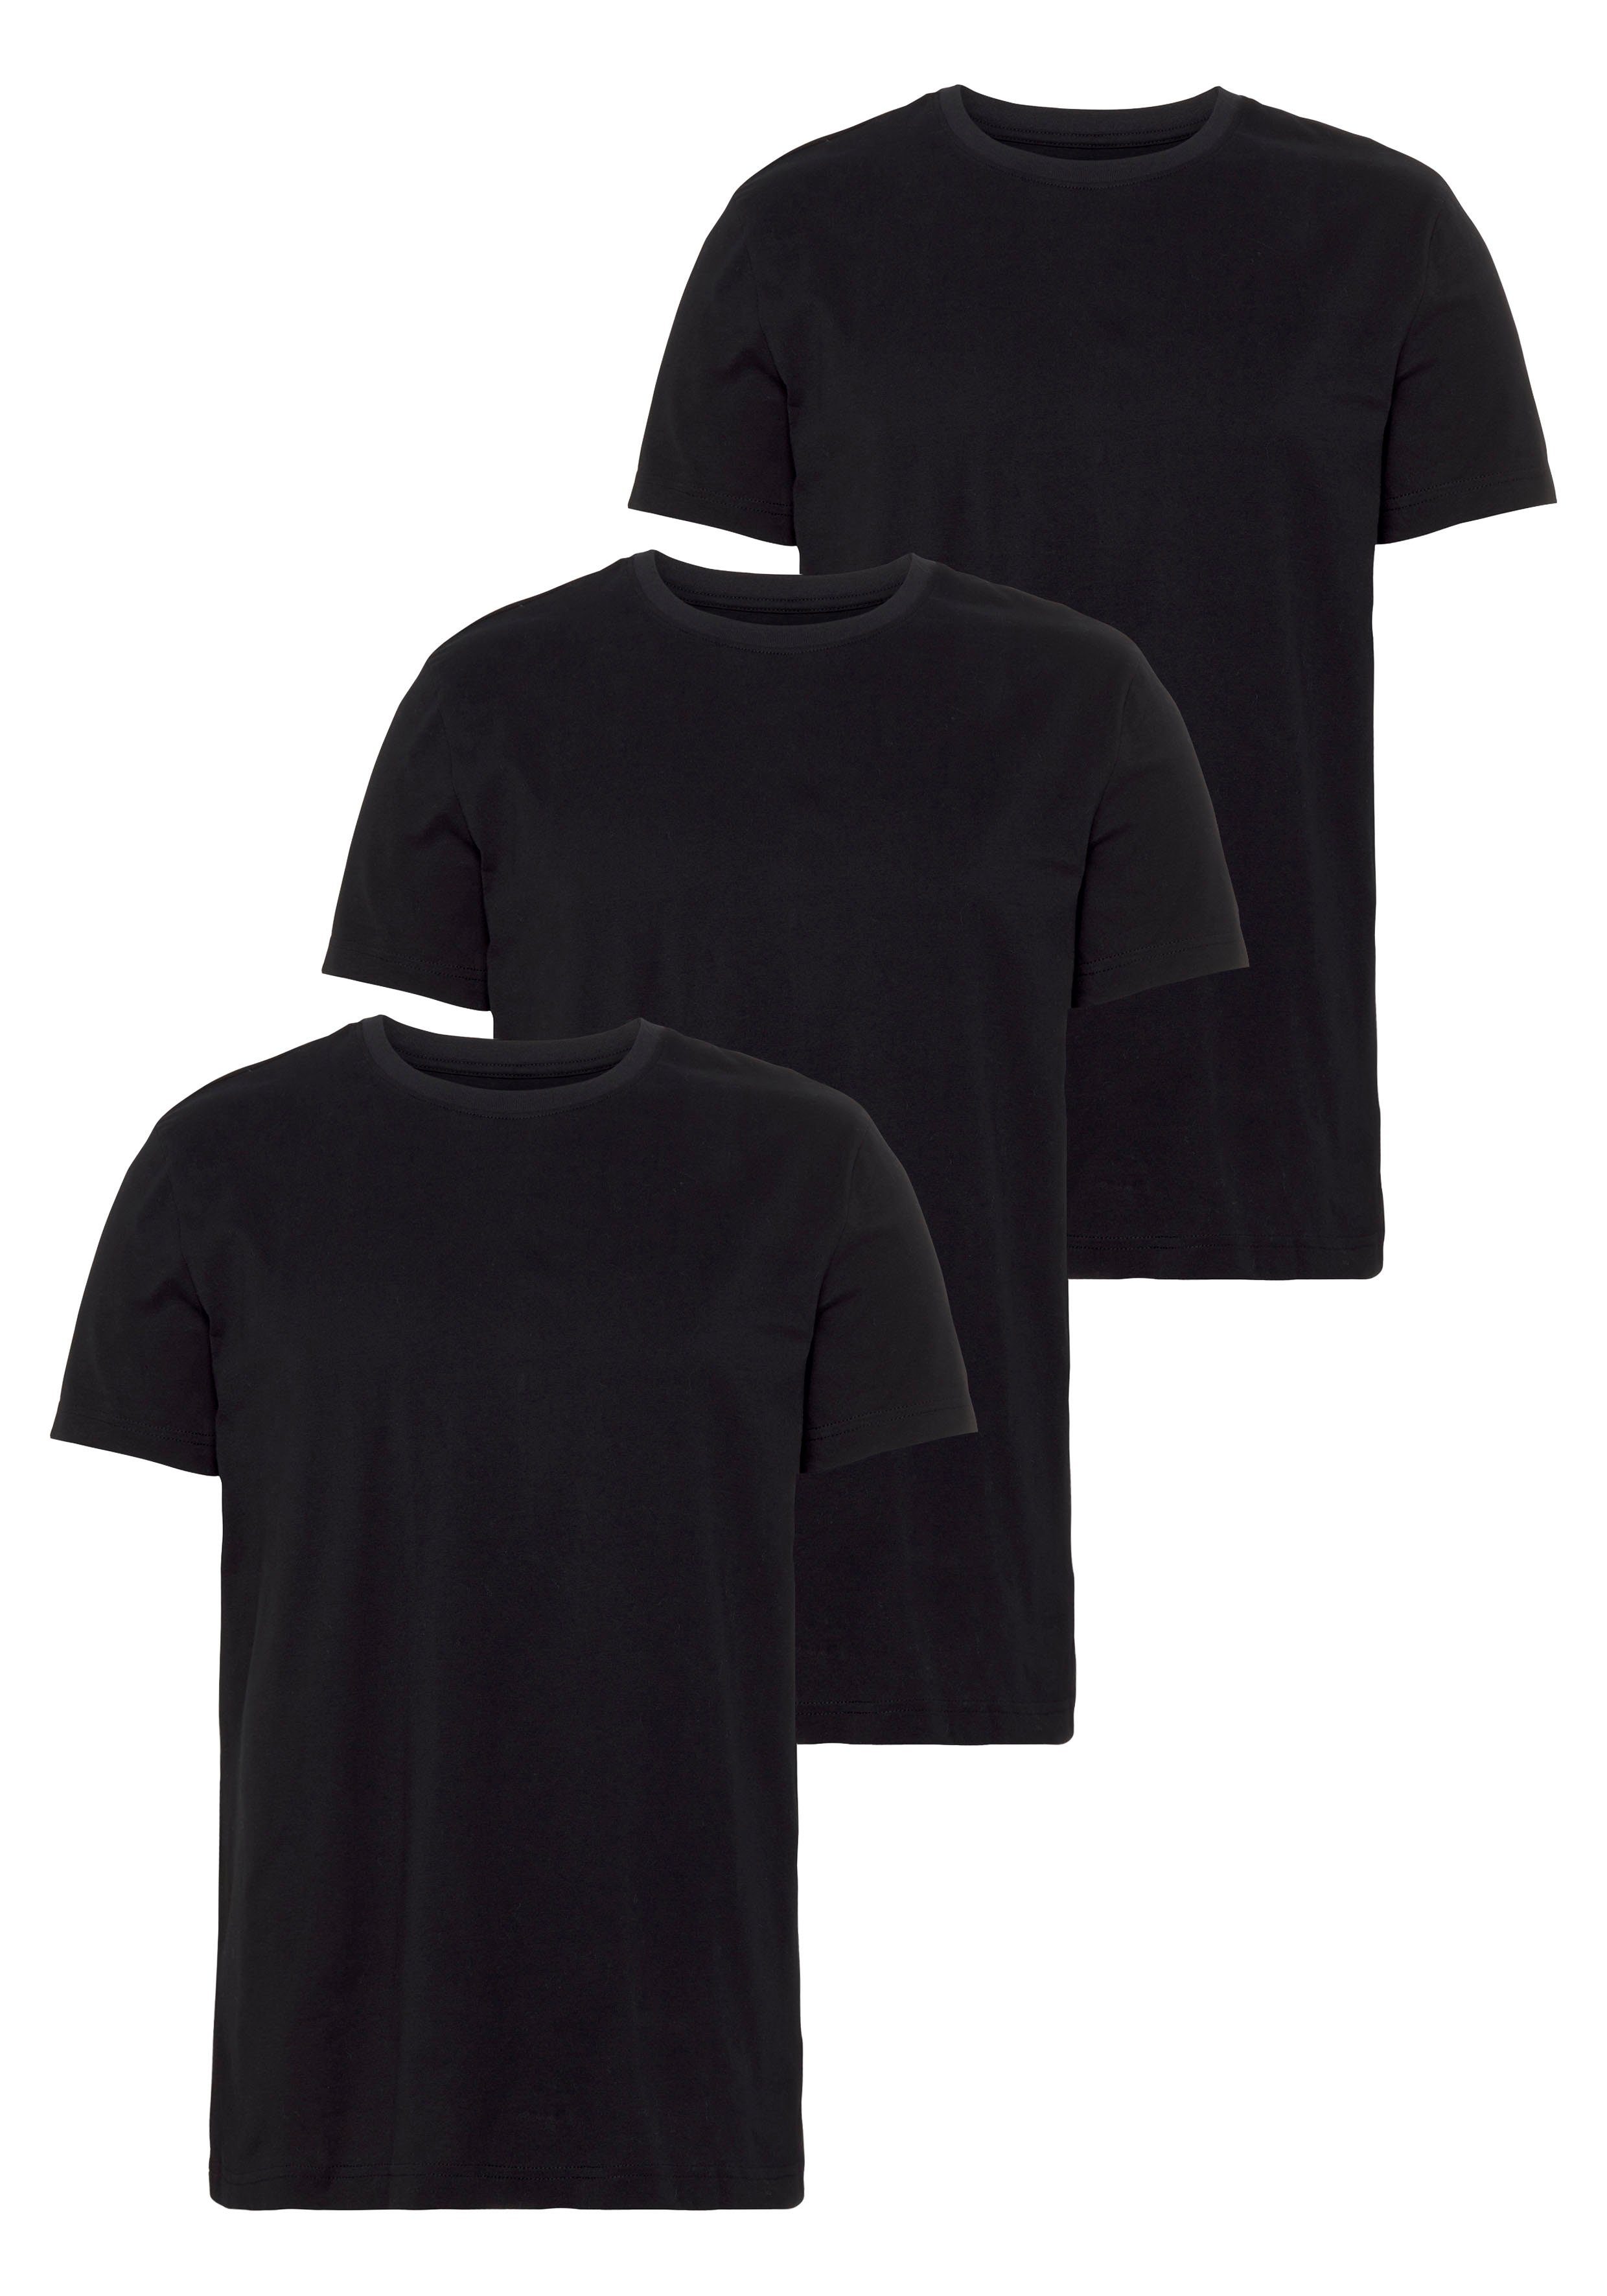 T-Shirts Große Größe für Herren kaufen » T-Shirts für Mollige